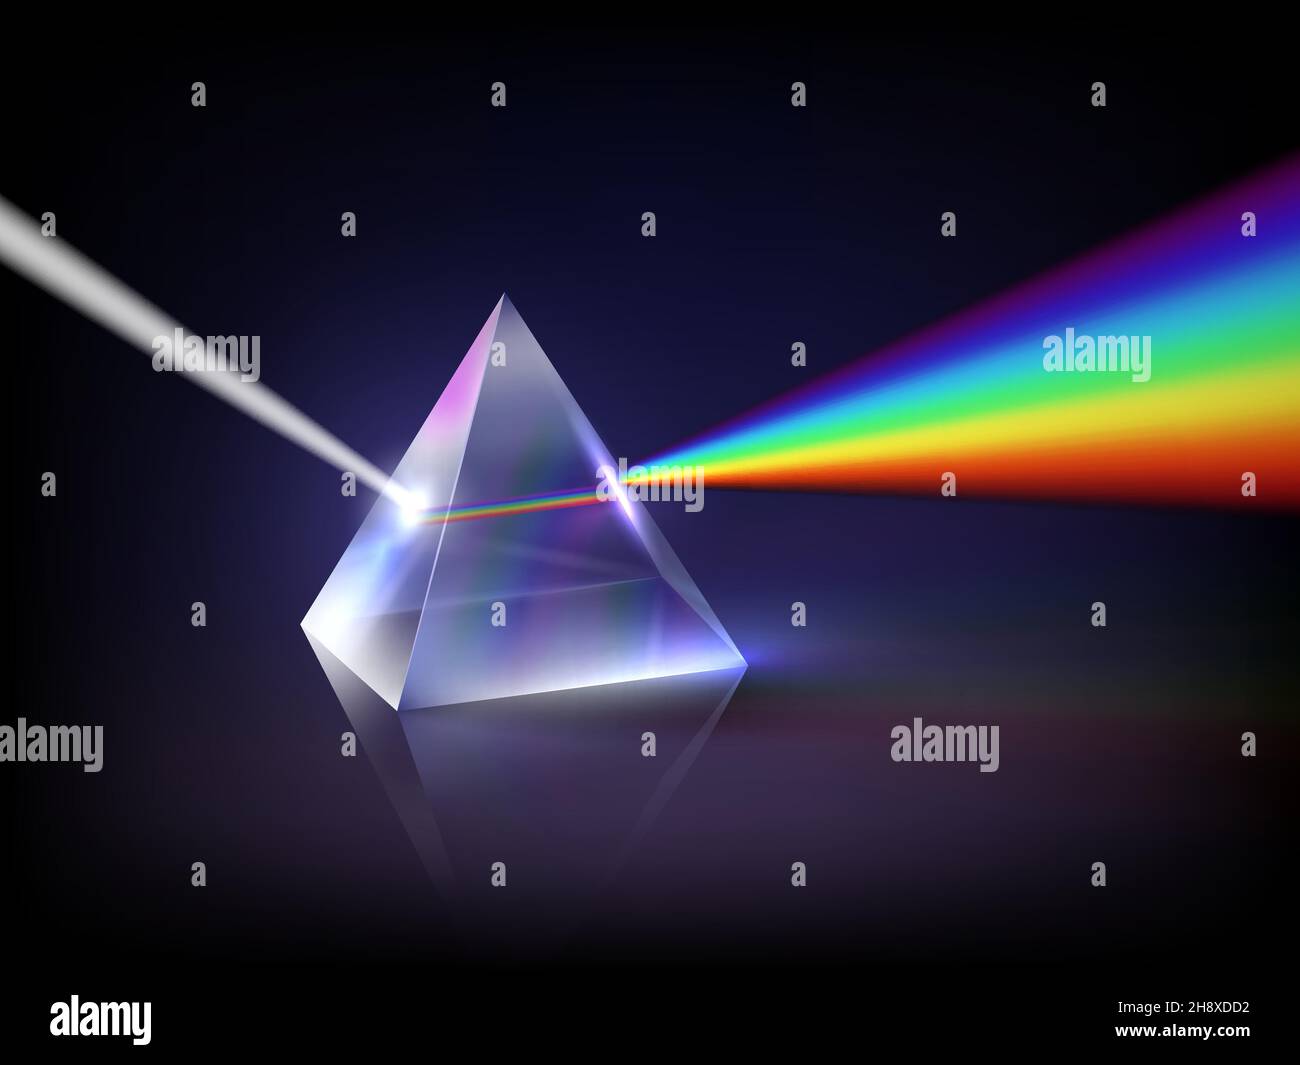 Rifrazione dello spettro. Prisma piramidale di vetro basso concetto astratto di poli luminescenza rifrazione della luce all'interno trasparente forma geometrica decente vettore arcobaleno Illustrazione Vettoriale